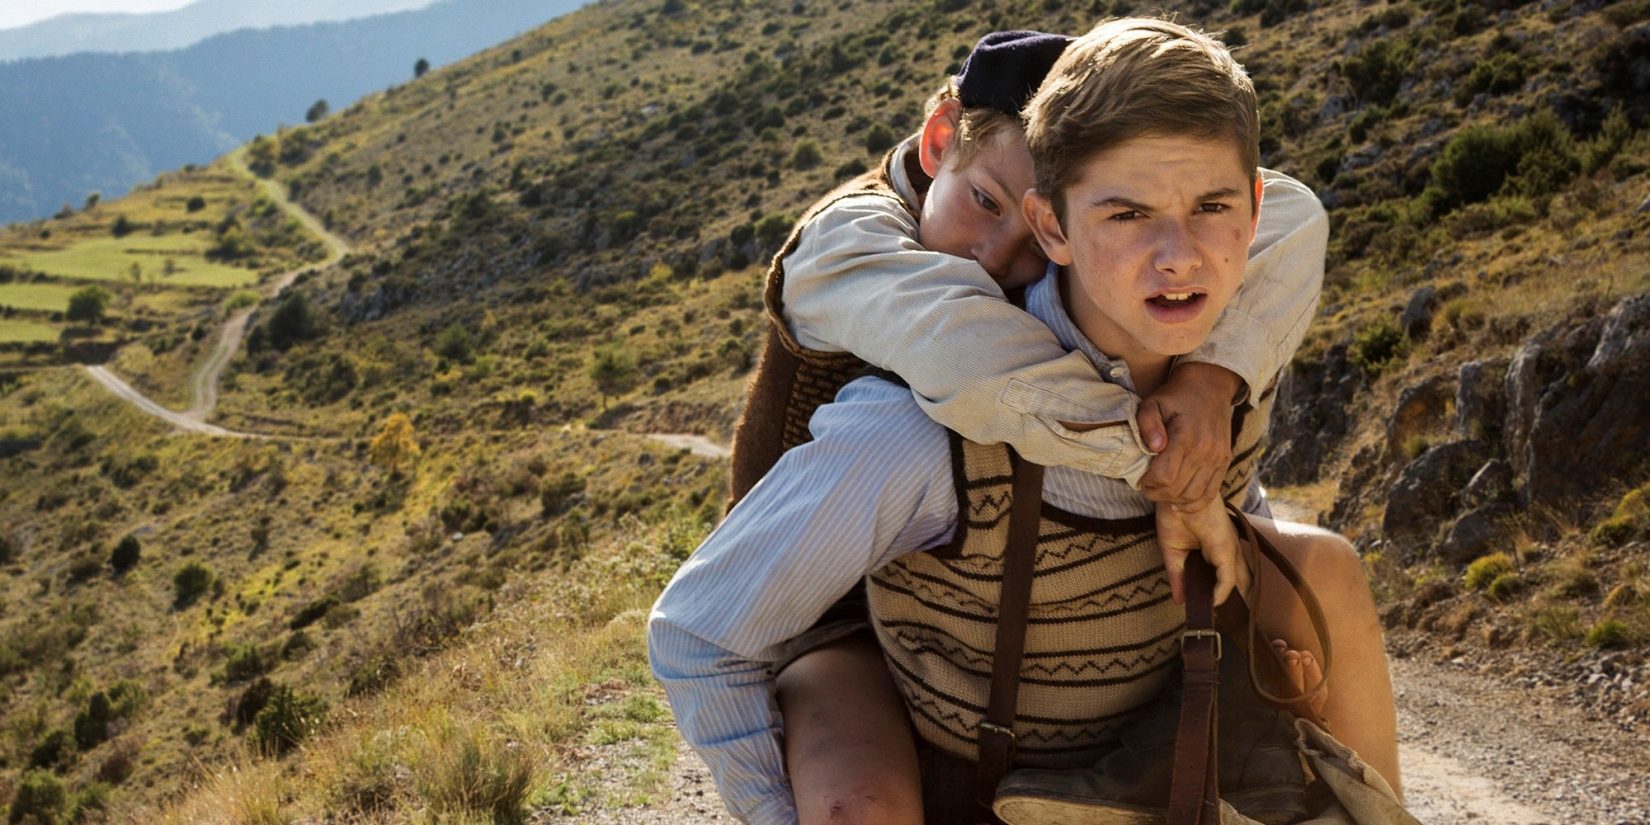 Cena do filme de 2017, com Maurice carregando Joseph por uma estrada de terra, no meio das montanhas